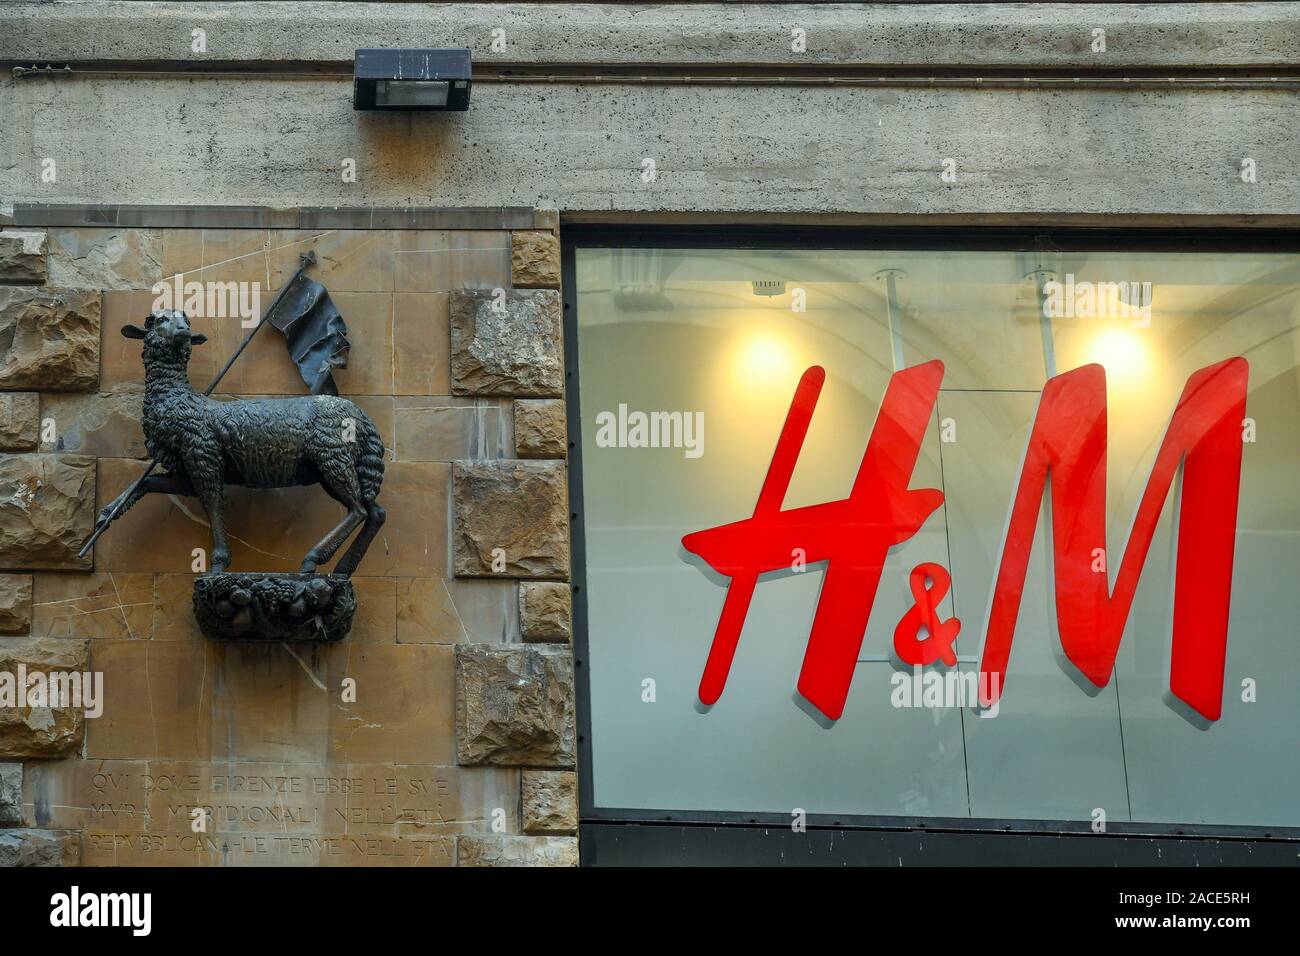 Detalle del Palazzo della Borsa Merci de bronce con el cordero, símbolo del  Arte della Lana, junto con el rótulo de la tienda de H&M department store,  Florencia, Italia Fotografía de stock -